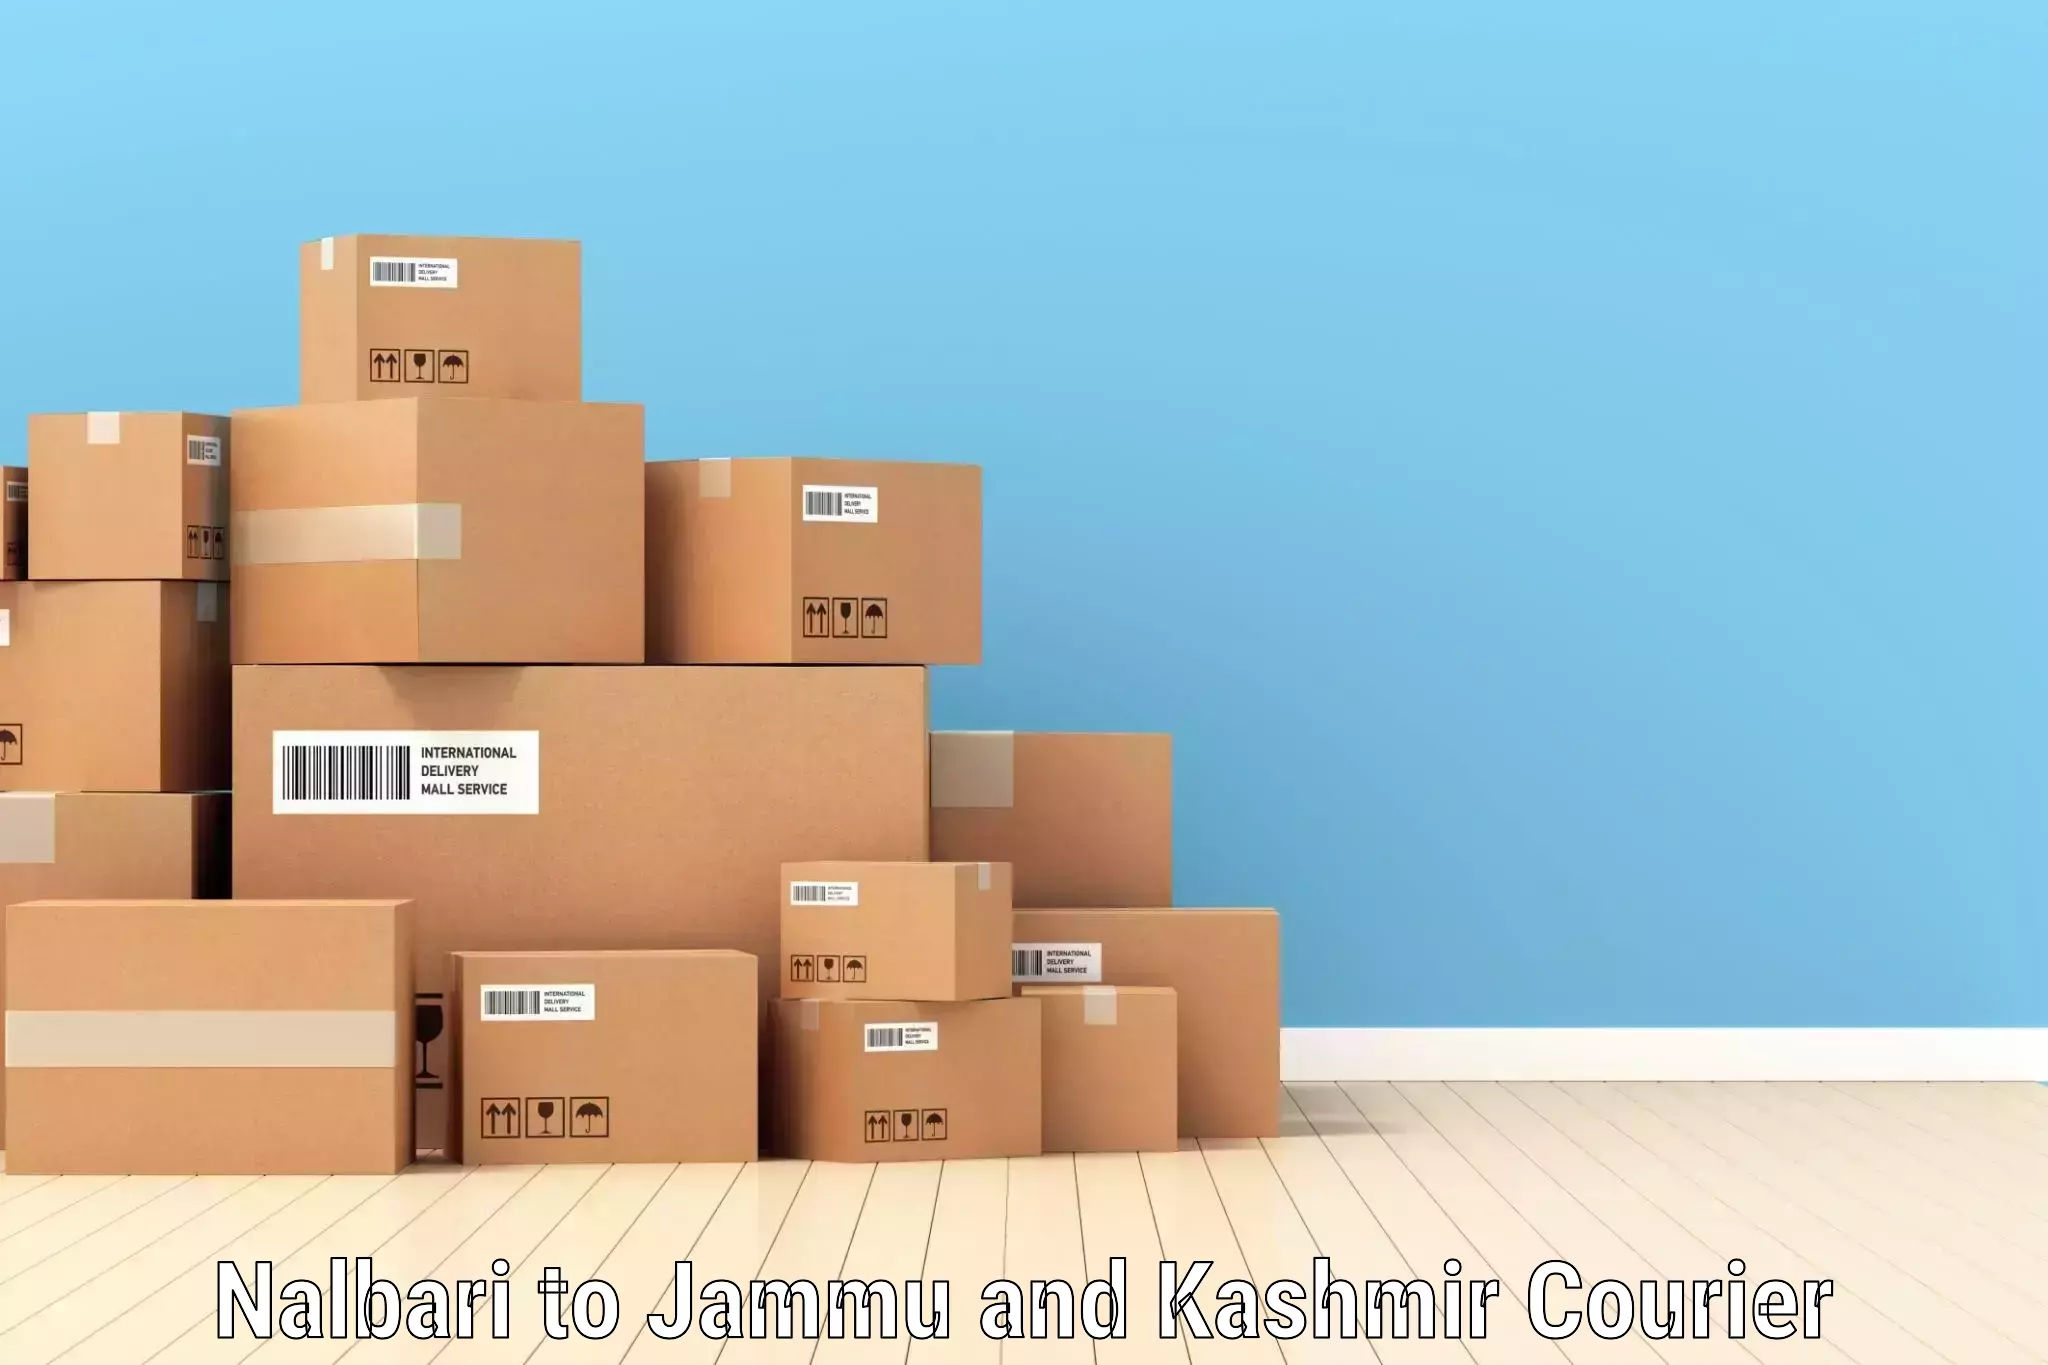 Full-service courier options Nalbari to Kishtwar